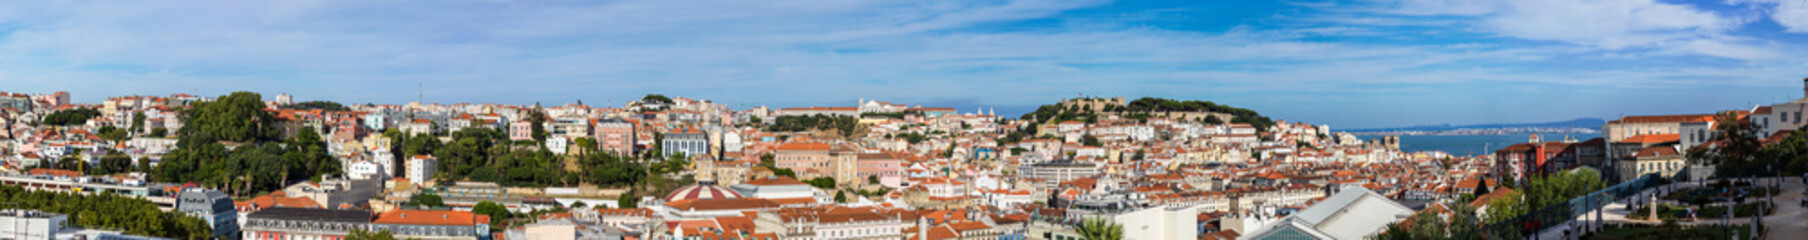 Fototapeta na wymiar Lisbon Skyline